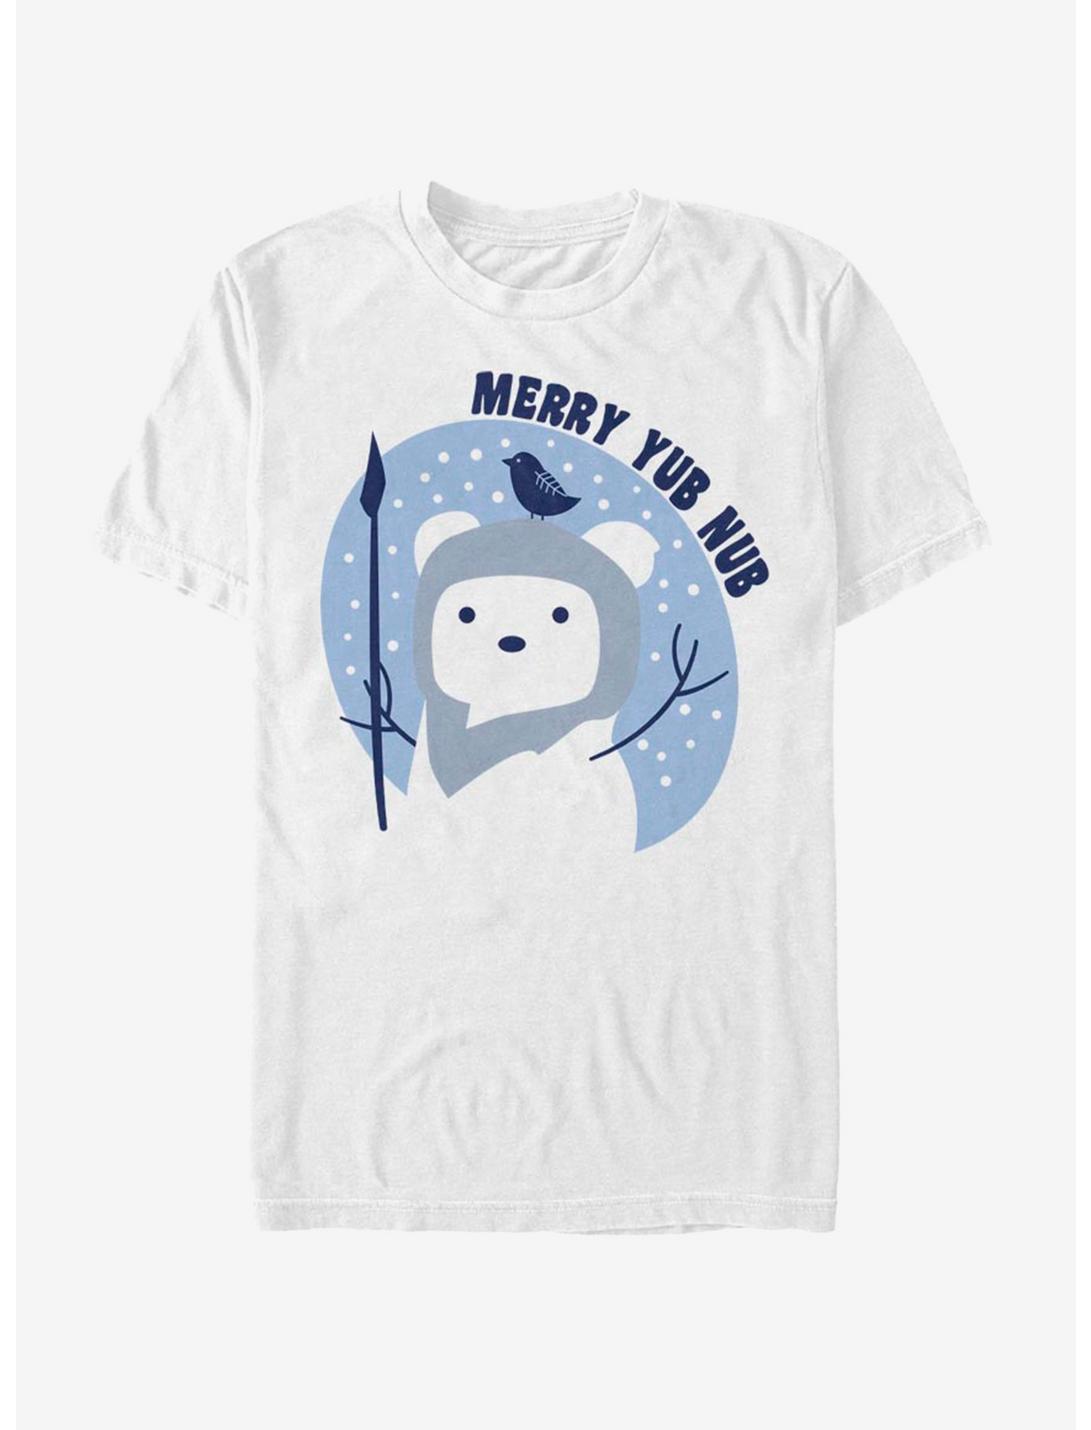 Star Wars Ewok Merry Yub Nub T-Shirt, WHITE, hi-res